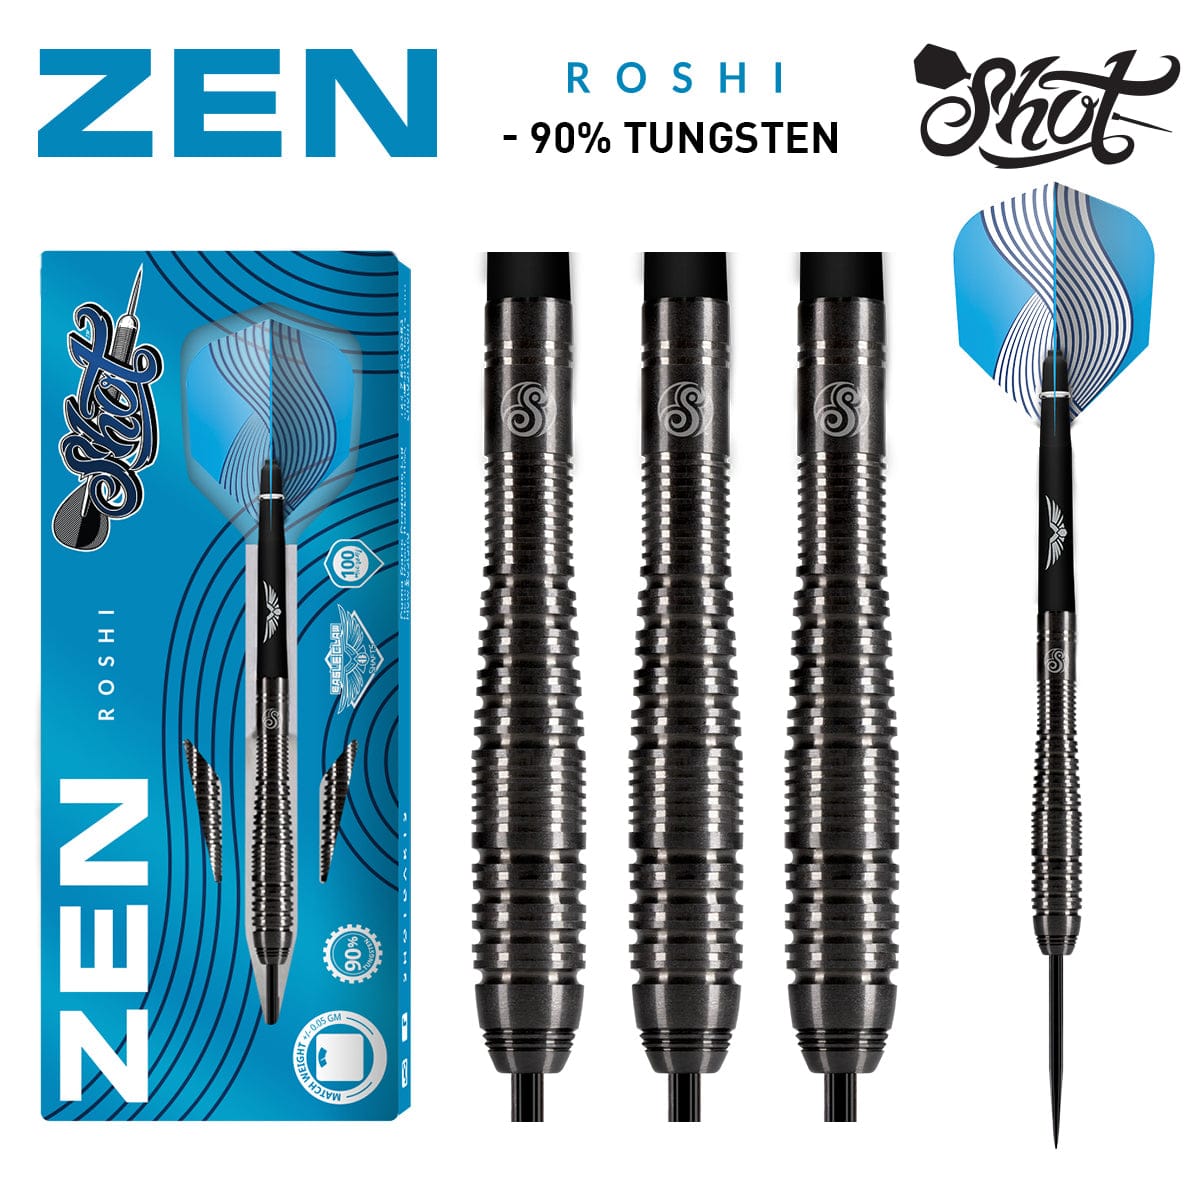 Zen Roshi Steel Tip Dart Set - 90% Tungsten Barrels